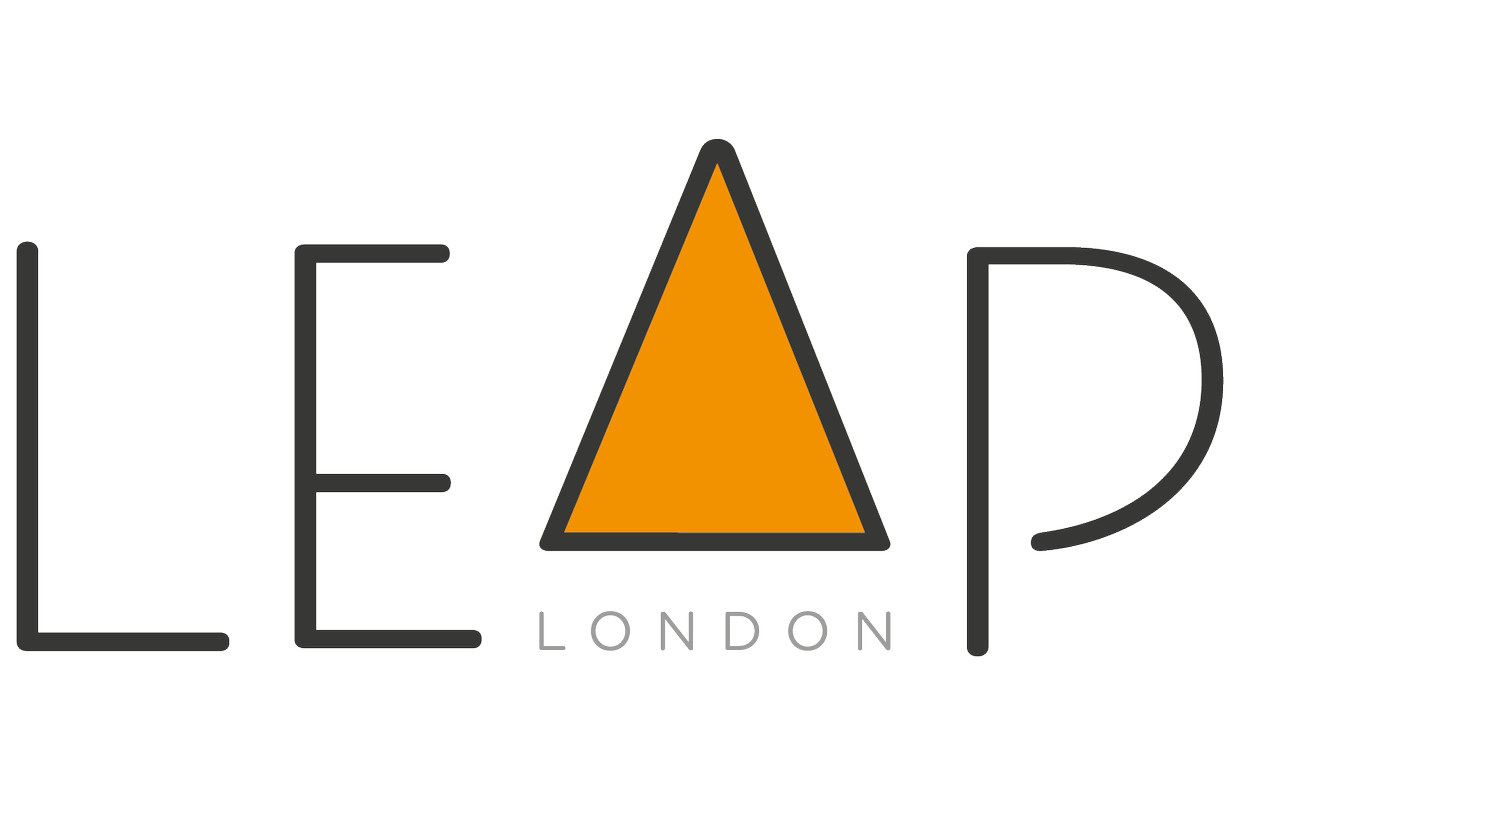 Leap London CIC